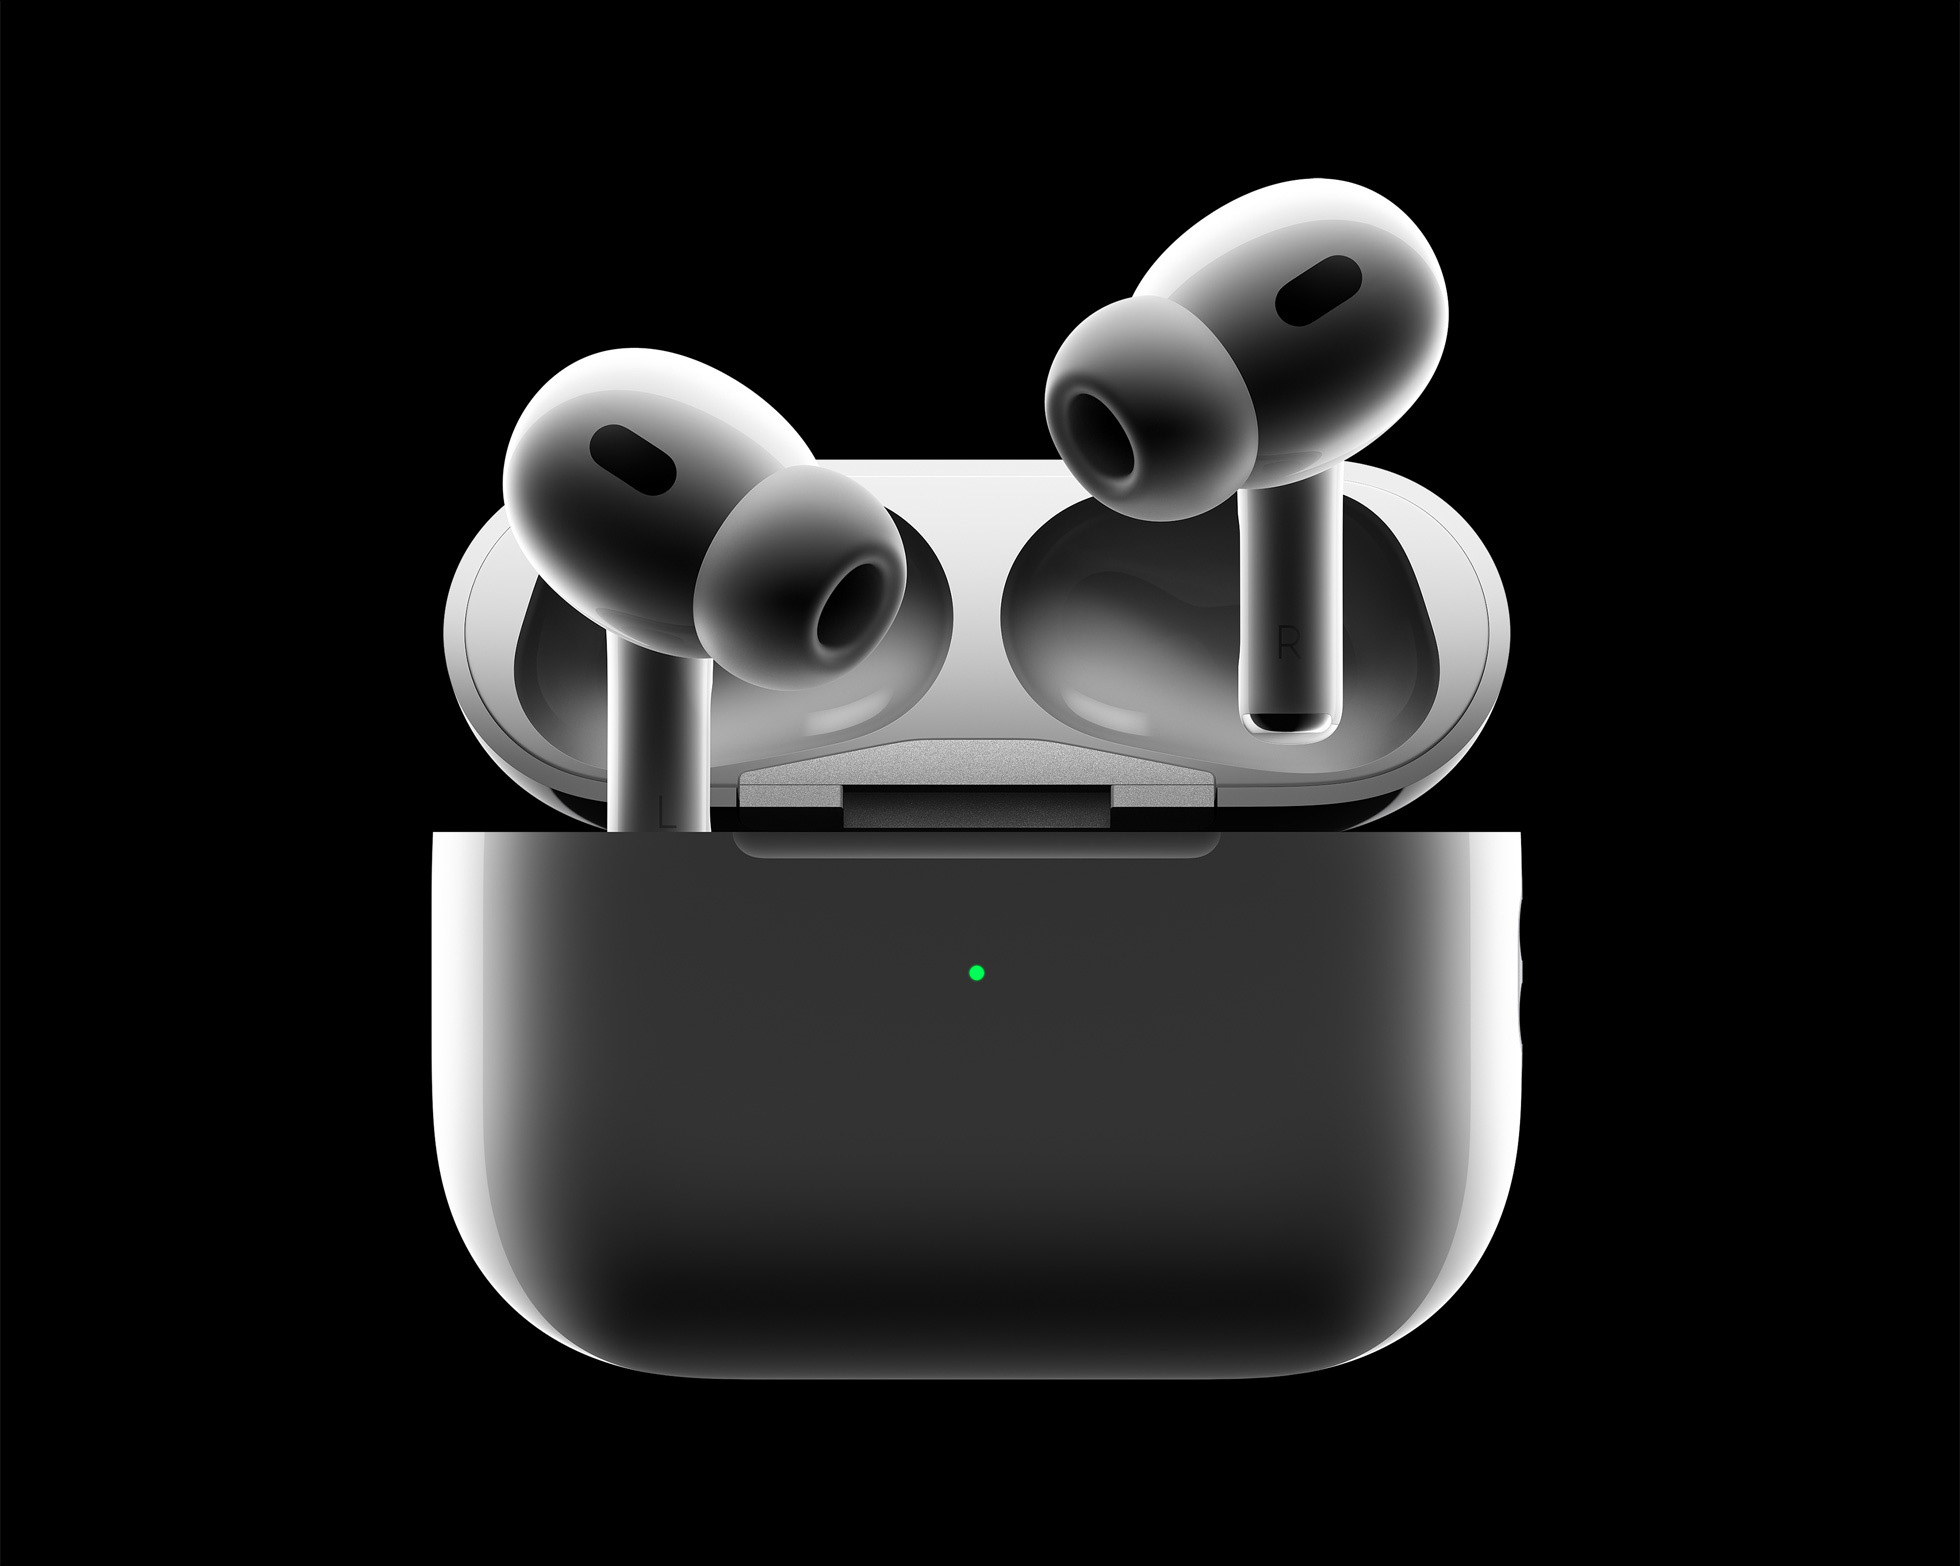 Laporan: AirPods ‘Lite’ akan membantu Apple bersaing dengan earbud di bawah 0